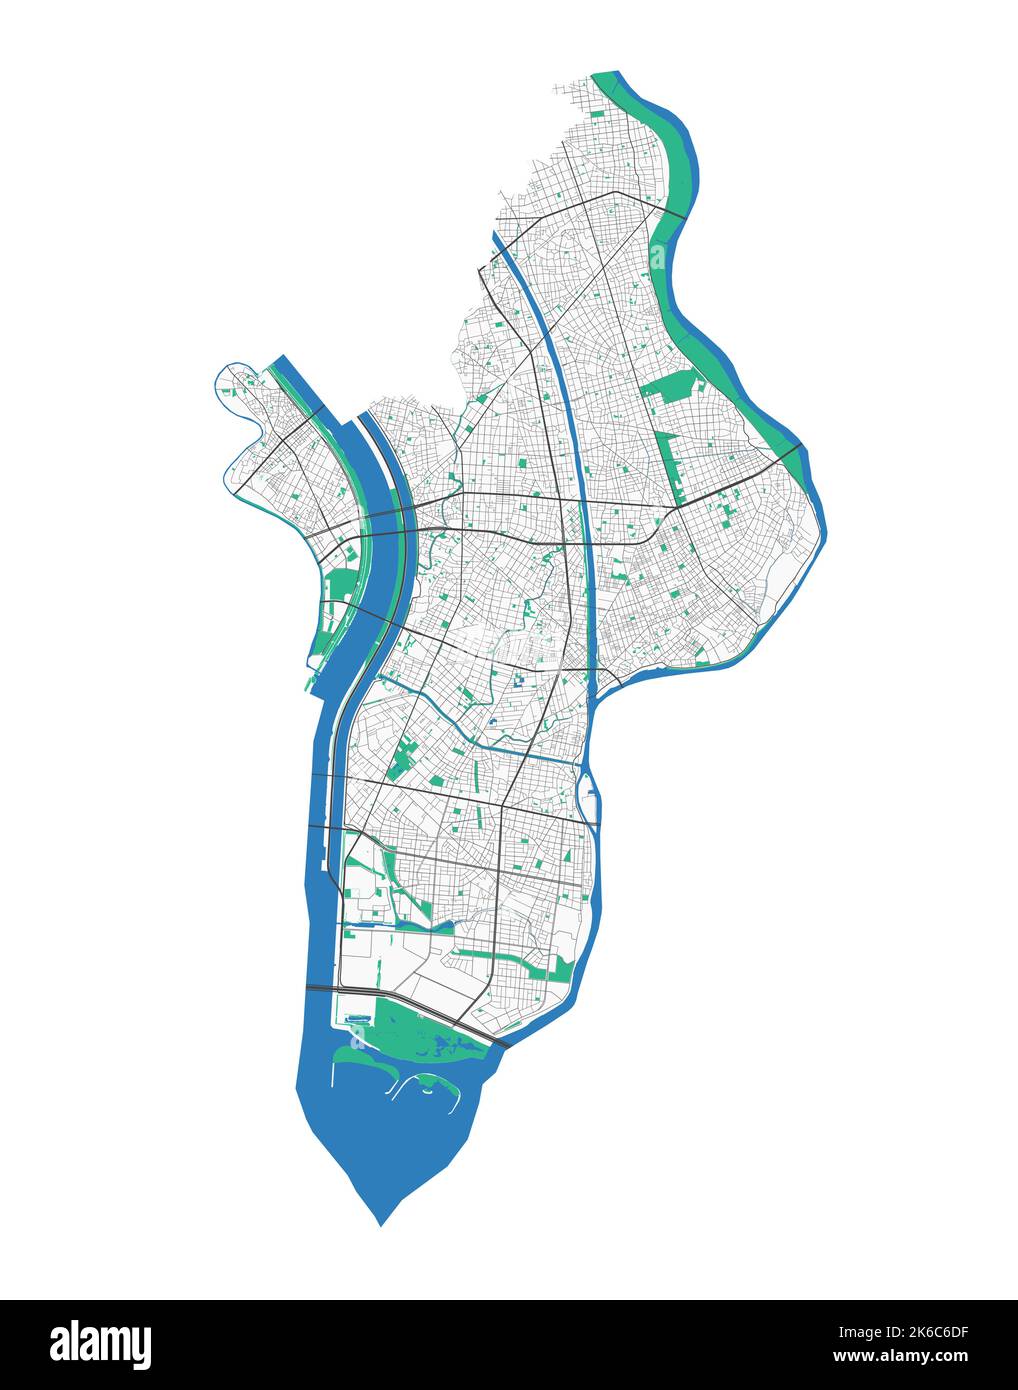 Mappa di Edogawa. Mappa dettagliata dell'area amministrativa della città di Edogawa. Panorama urbano. Illustrazione vettoriale senza royalty. Mappa stradale con autostrade, fiumi. Illustrazione Vettoriale